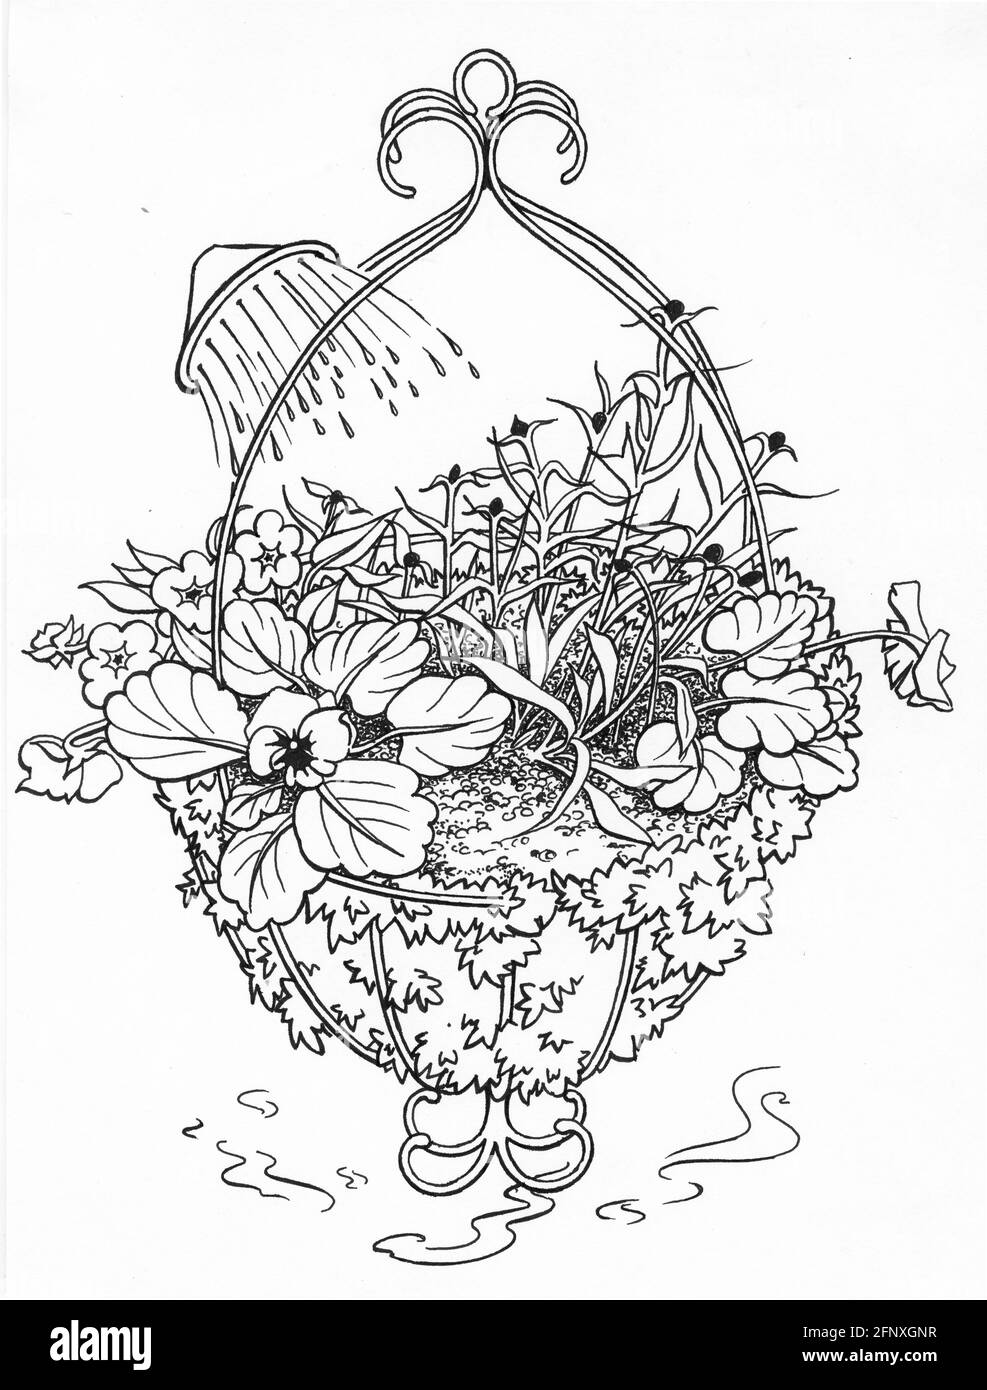 Un disegno di un cesto appeso completato con uno sfagnum liner muschio e piante fiorite Foto Stock